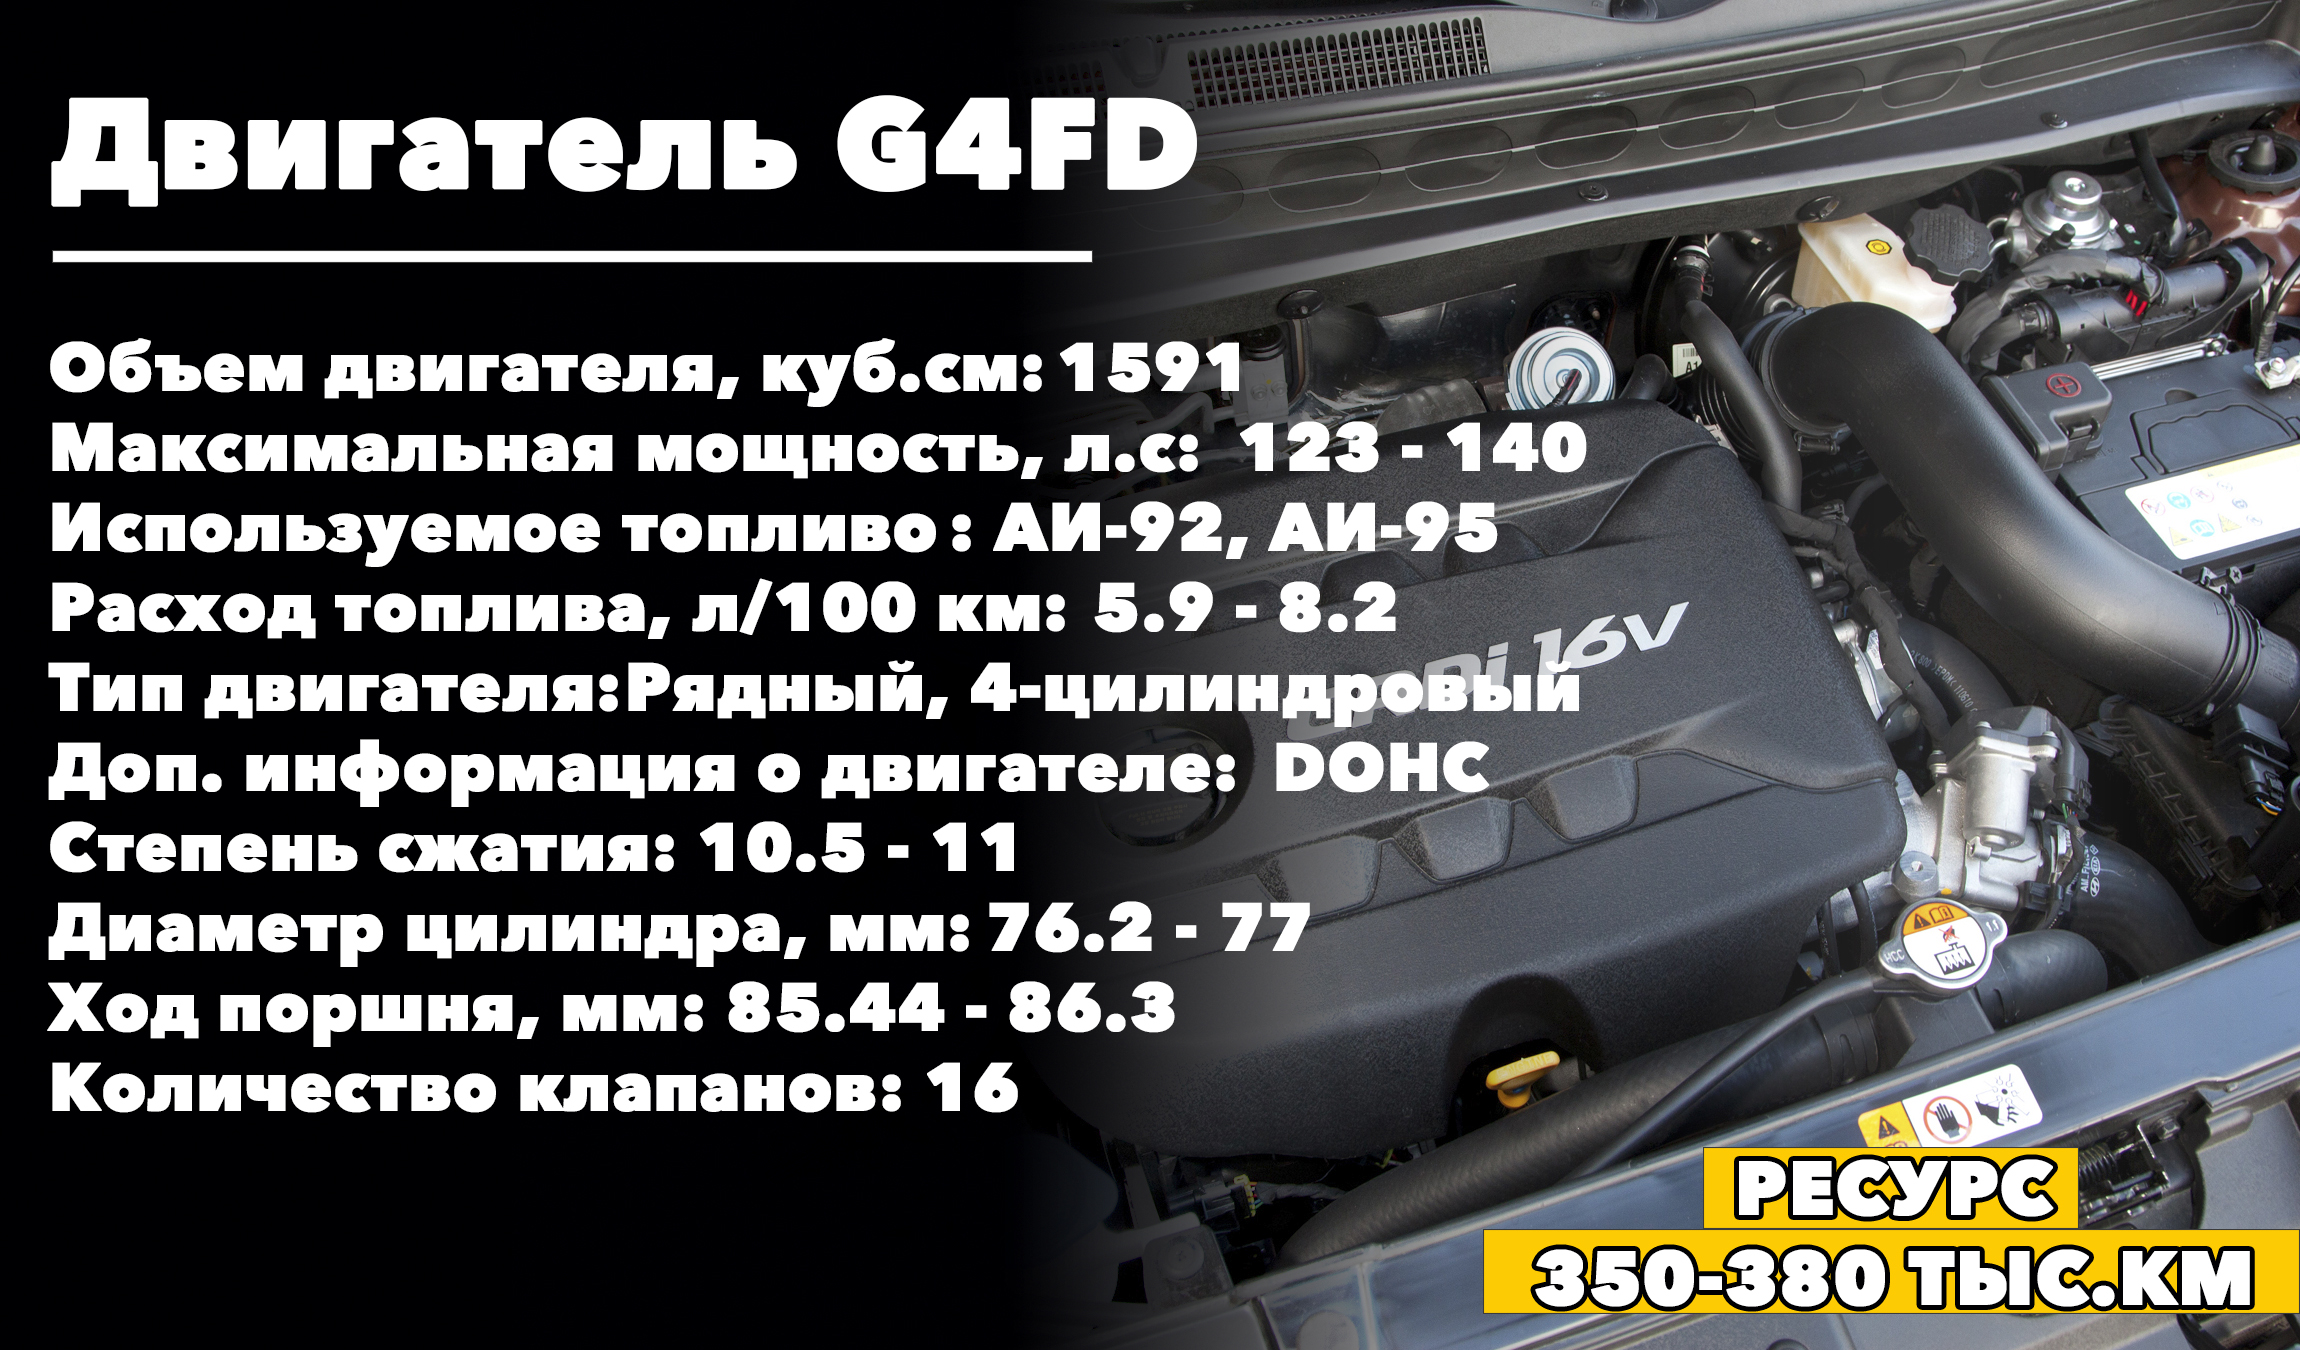 Сколько ходит бензиновый двигатель G4FD